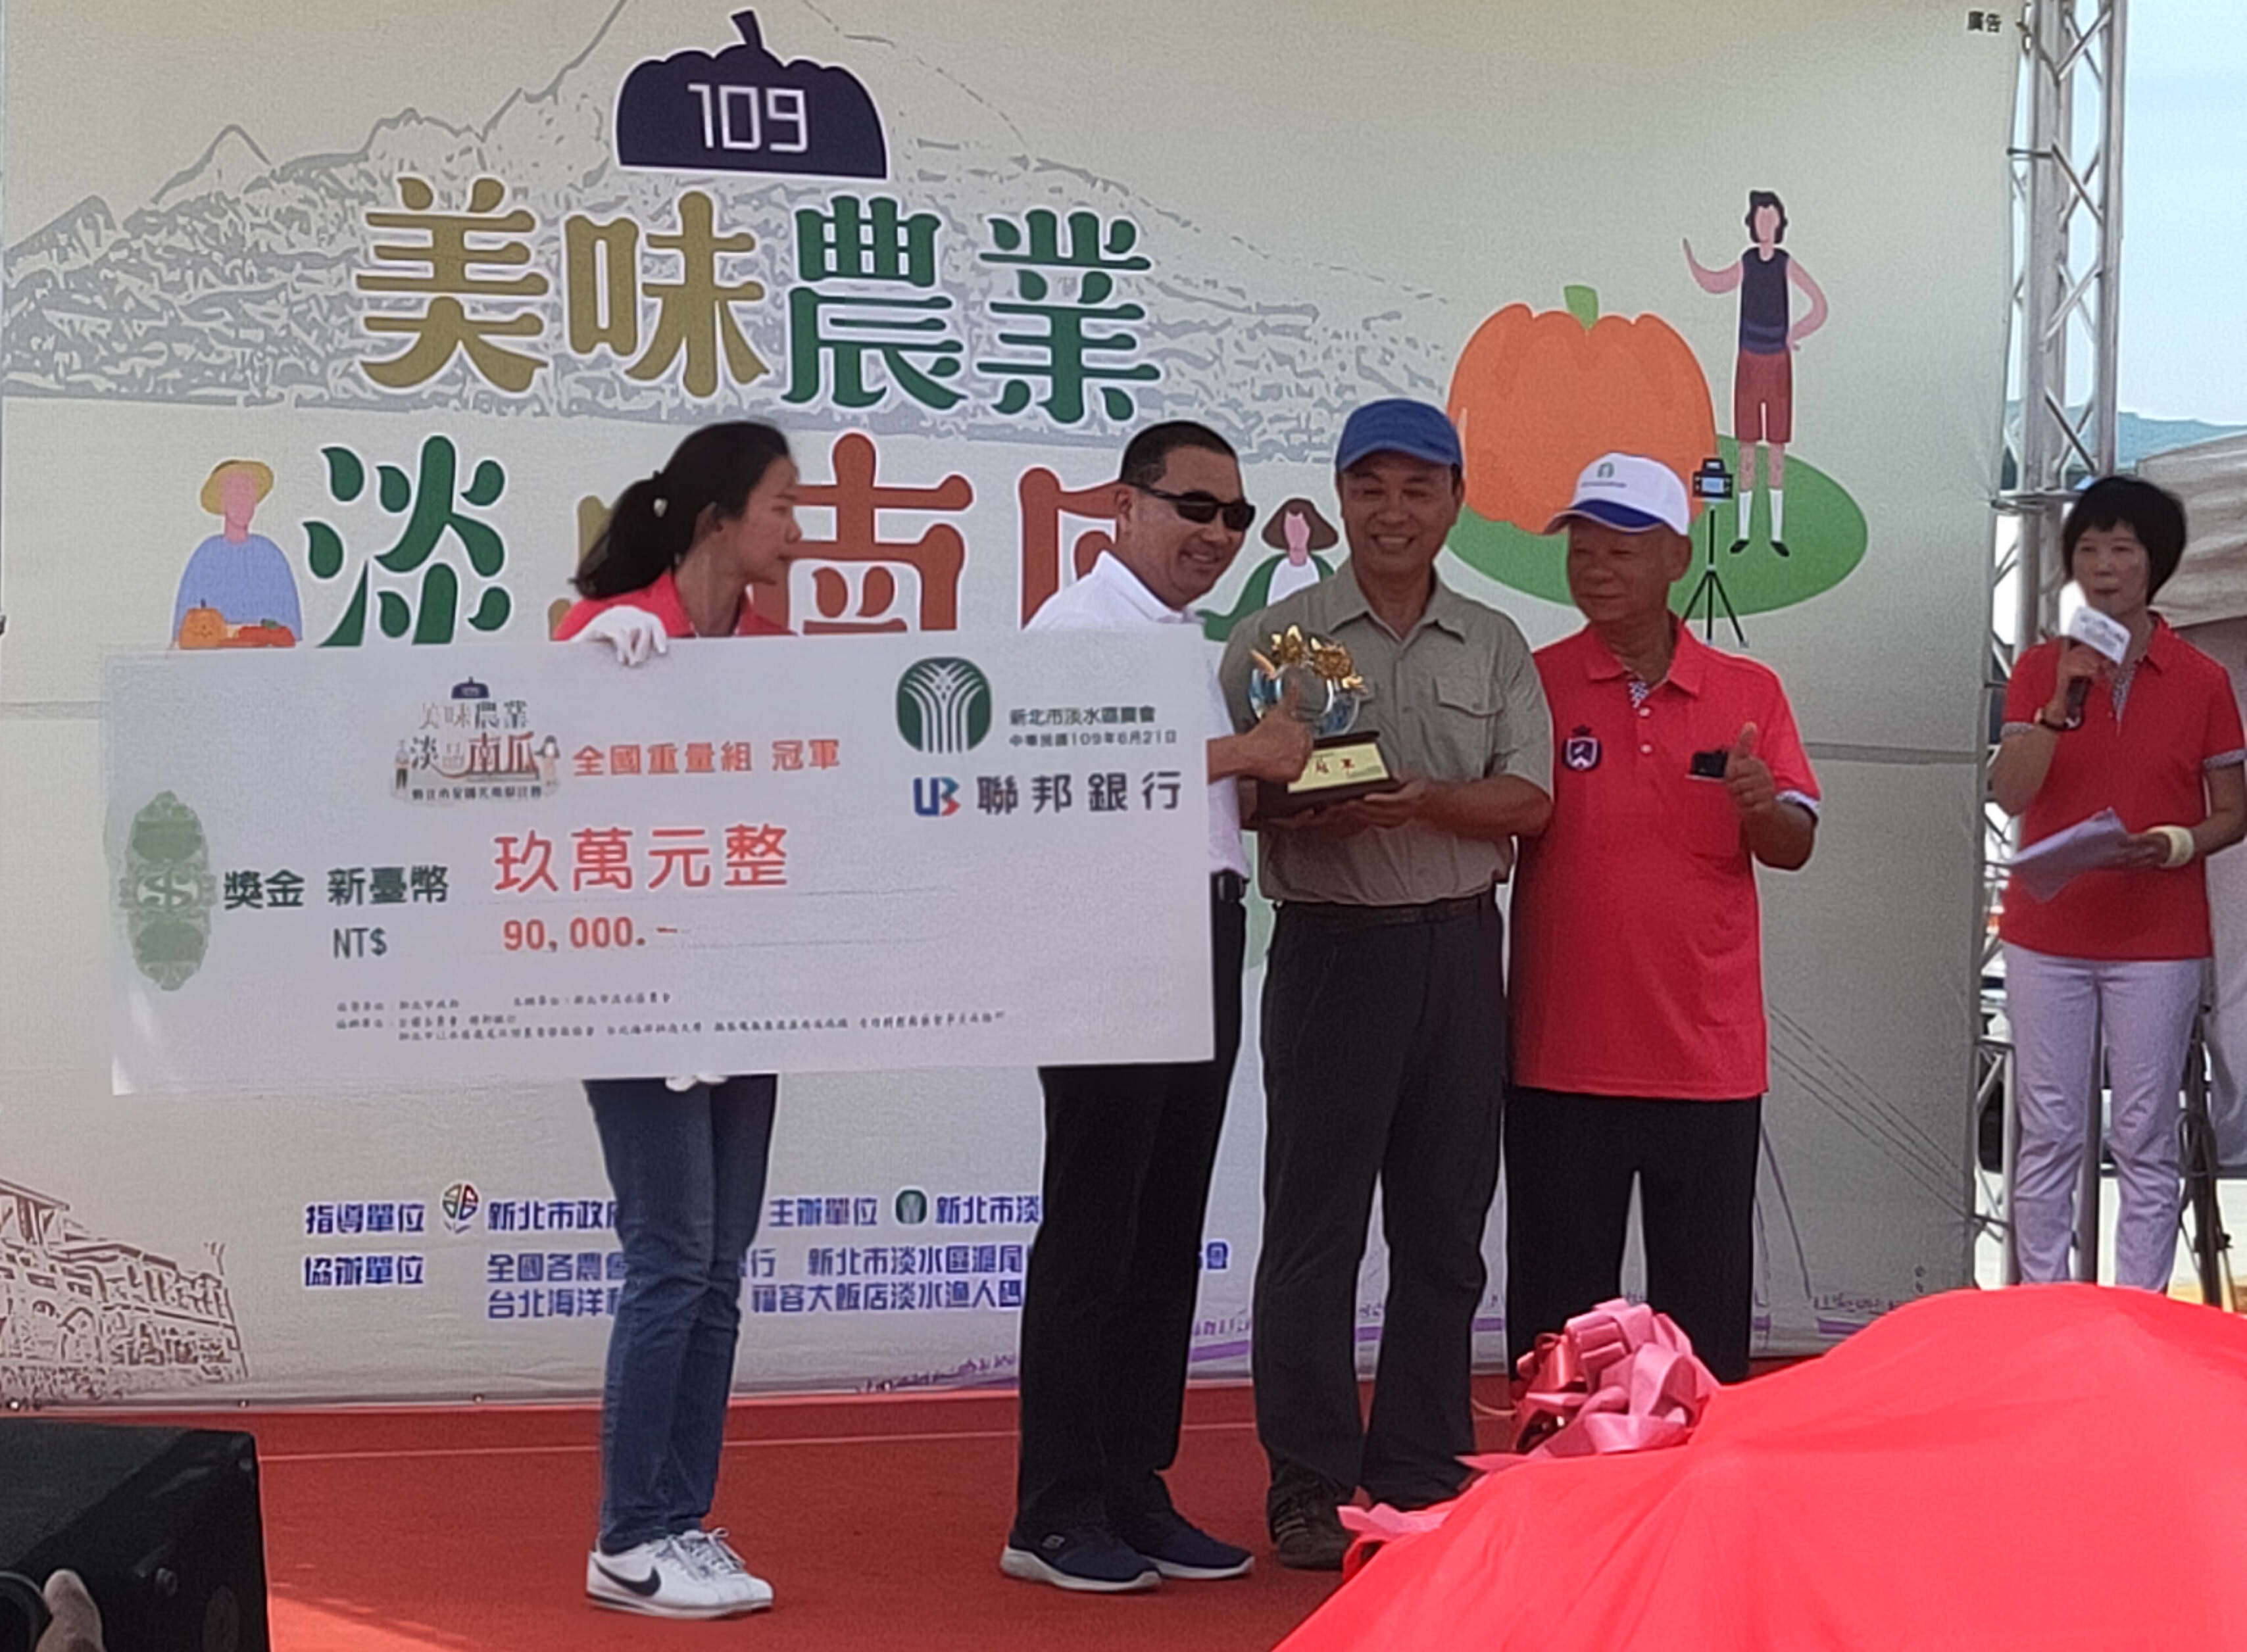 新北市侯友宜市長頒發獎座及獎金玖萬元給重量組冠軍林建訓先生。